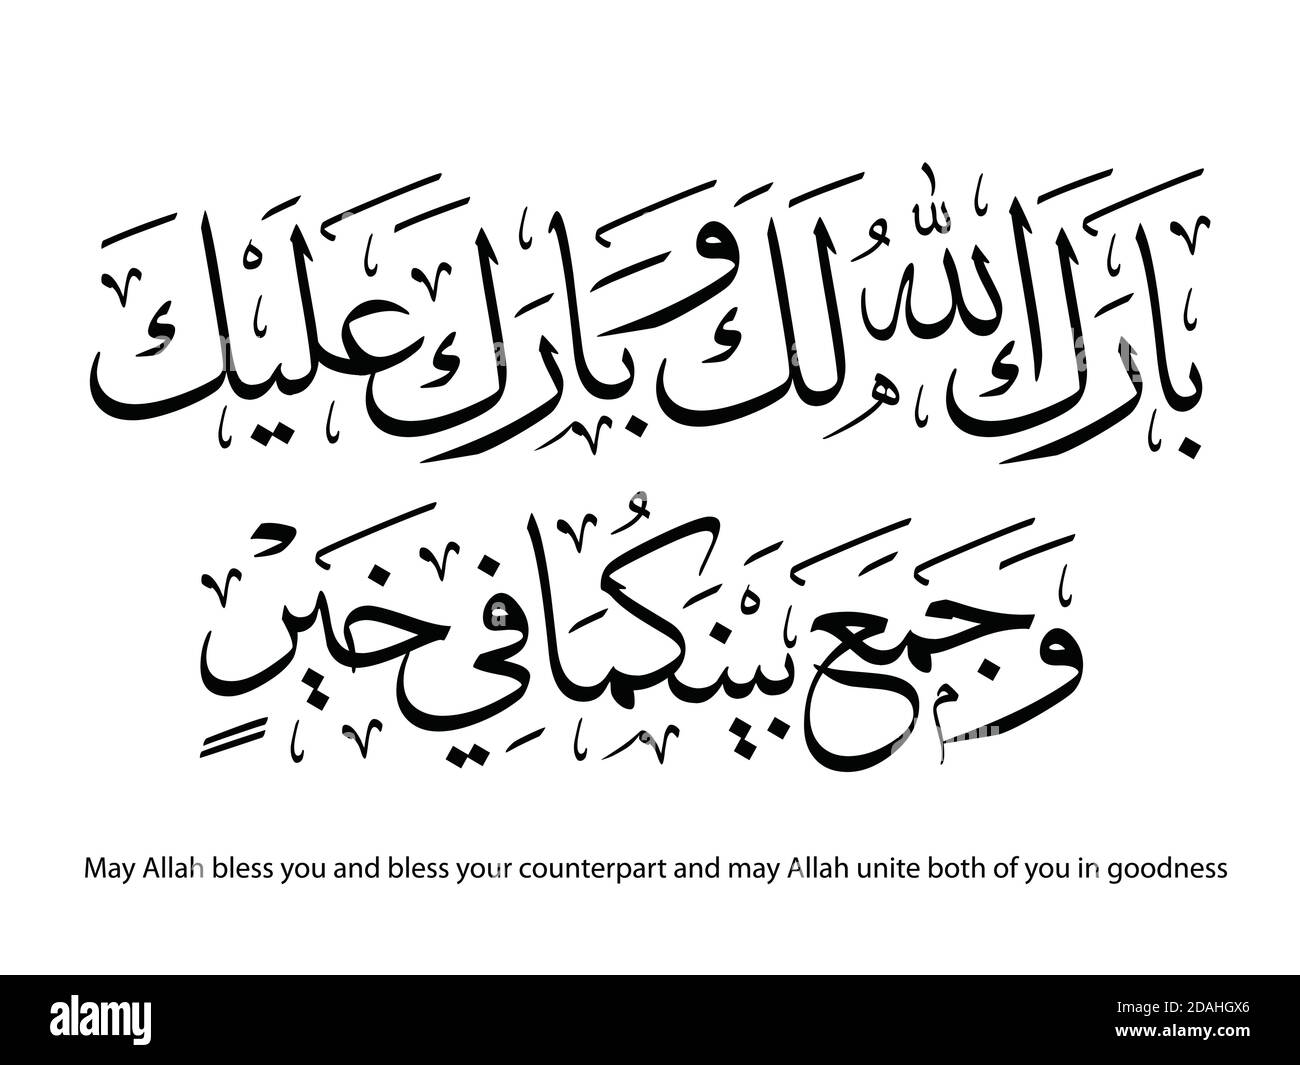 Souhaits pour les couples musulmans Calligraphie arabe - Barakallahu laka Illustration de Vecteur